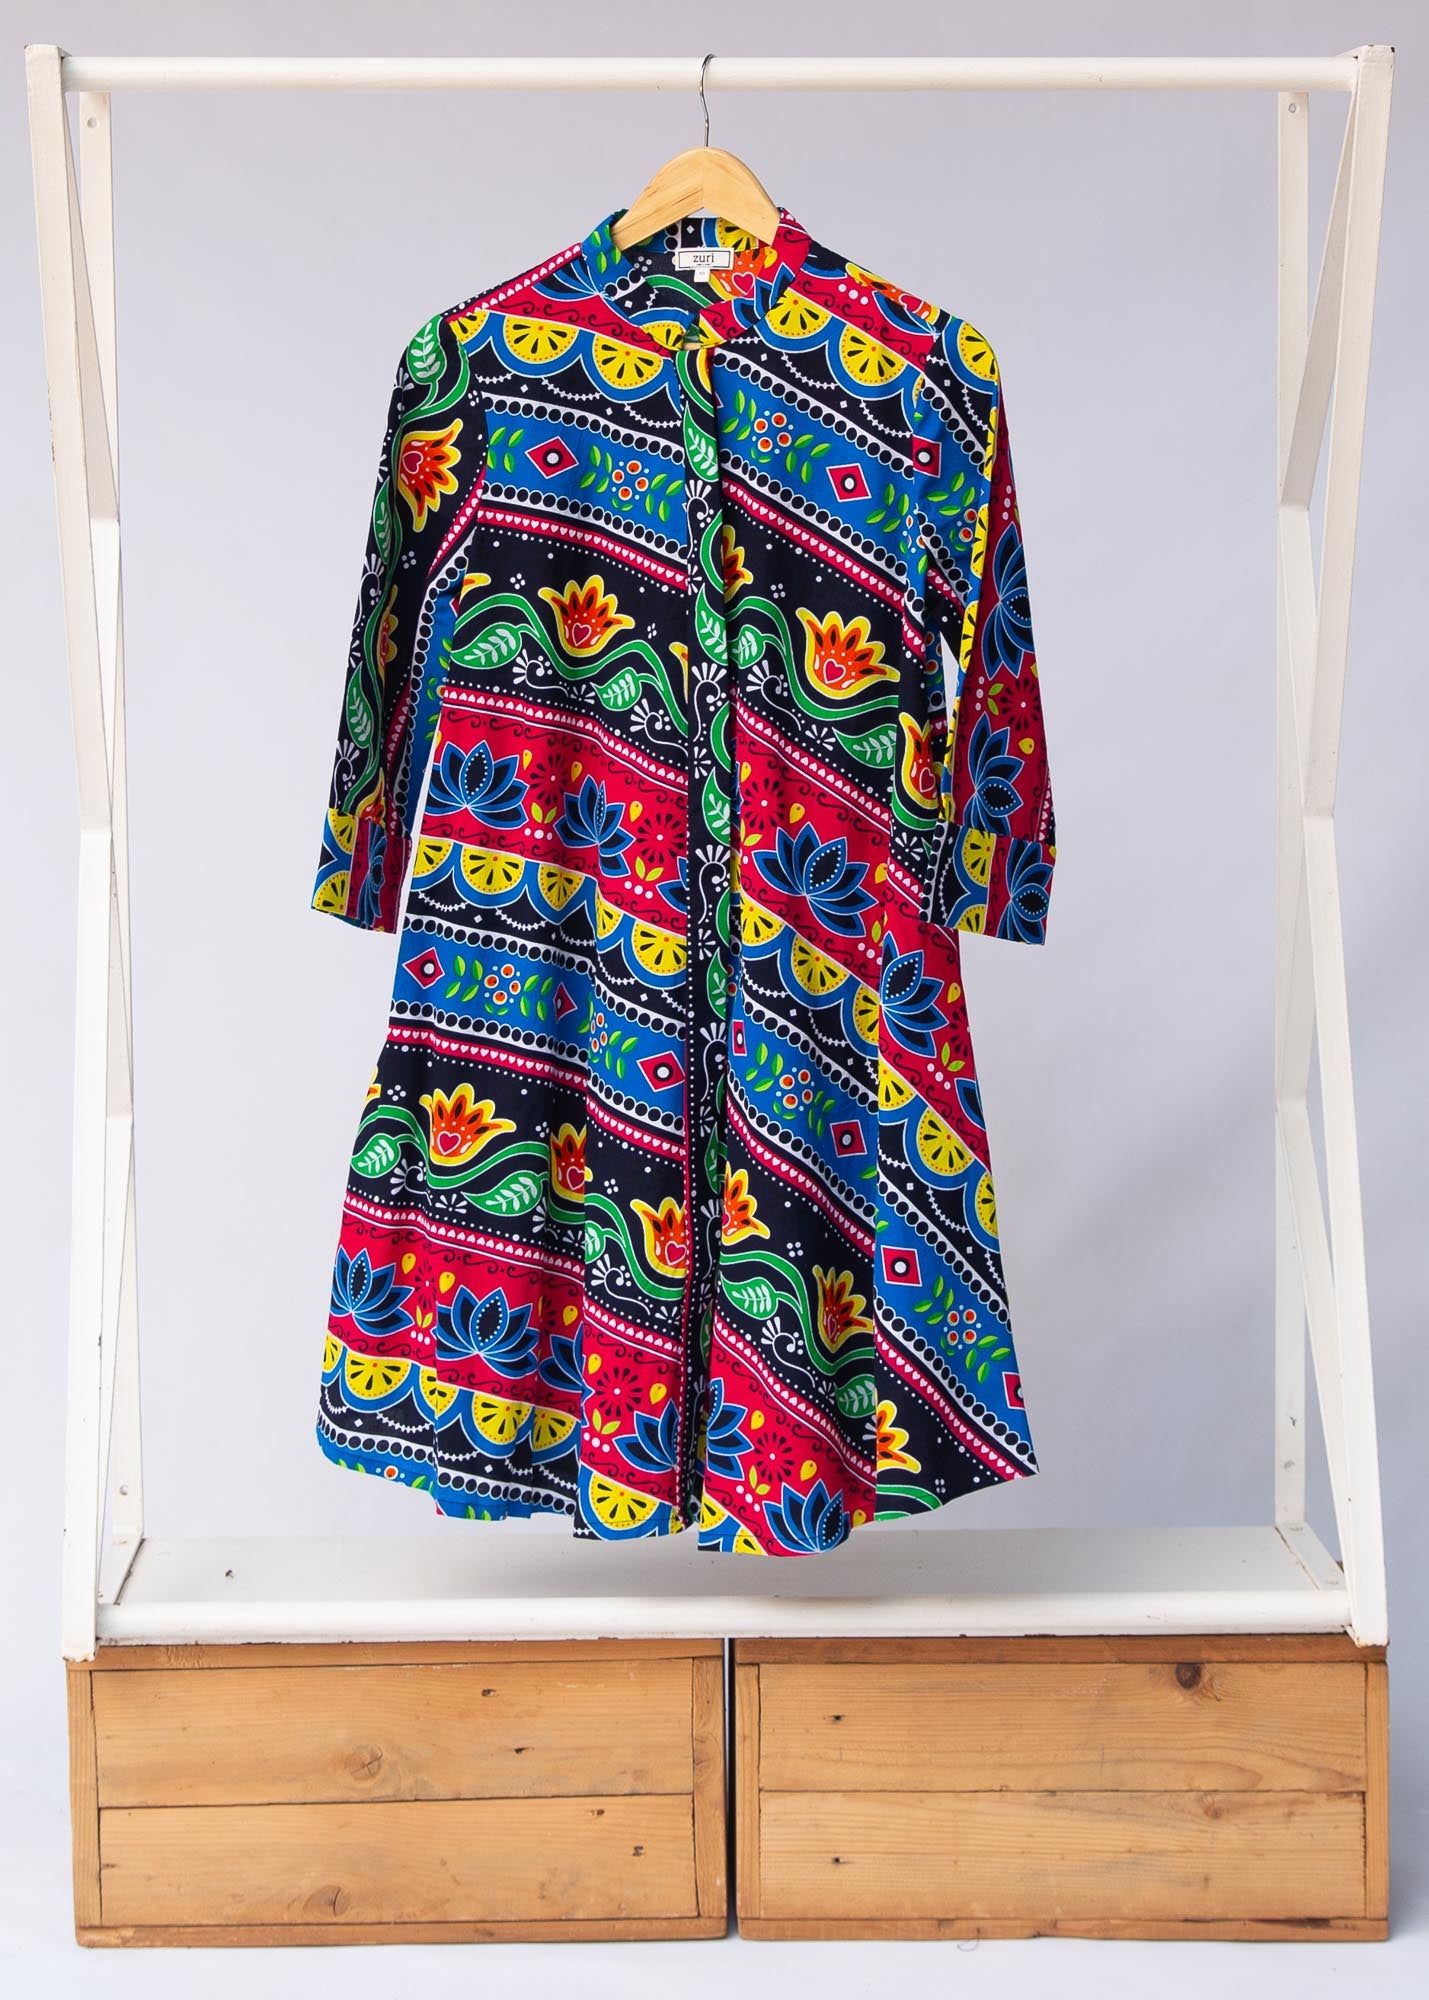 Display of colorful mandala print dress